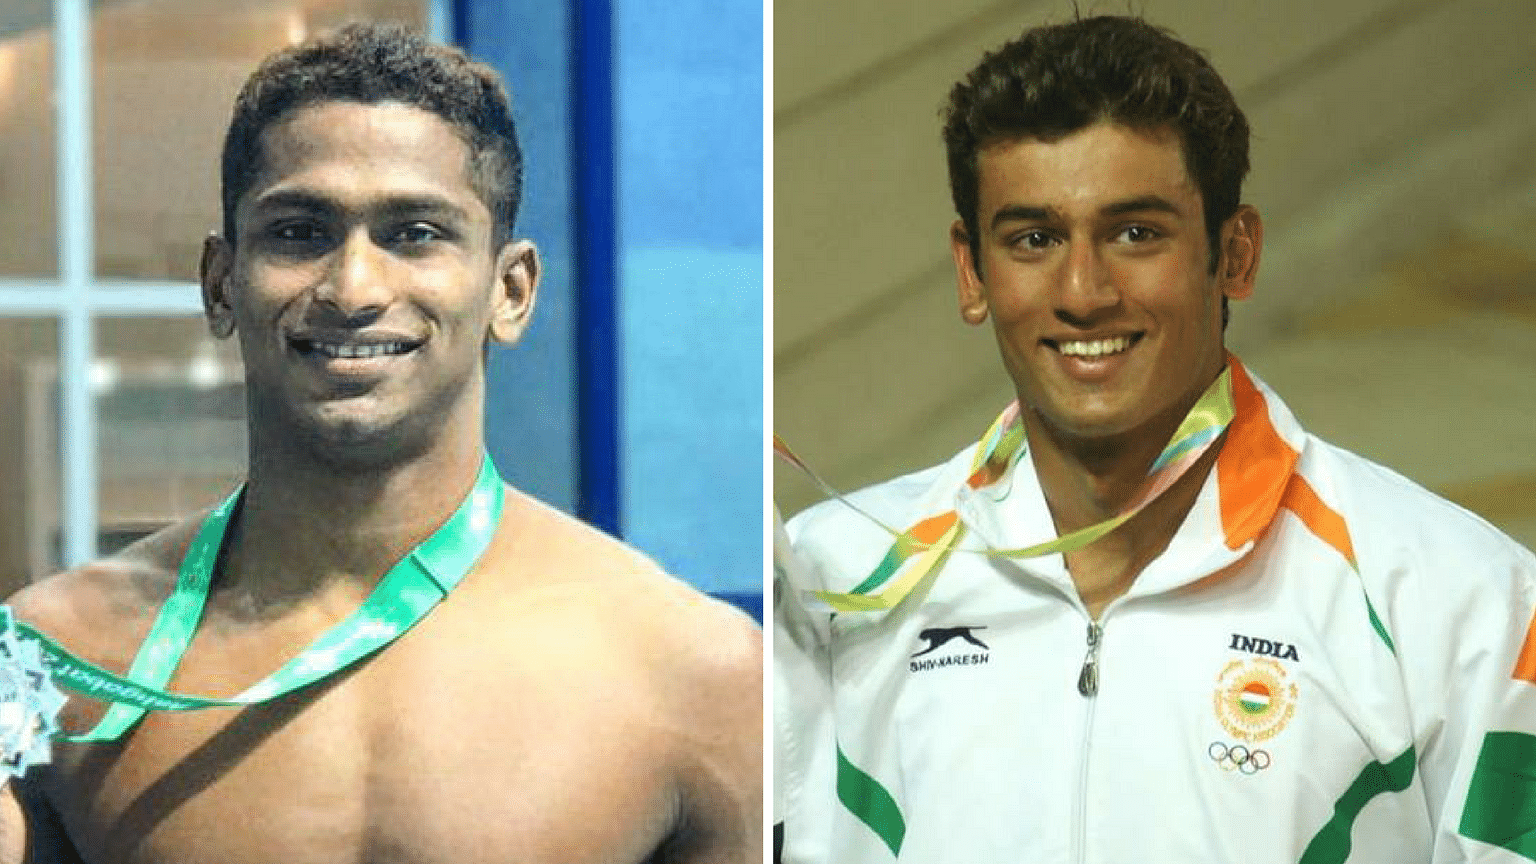 Sajan Prakash (L) and Virdhawal Khade (R) will be India’s big hopes in swimming at the 2018 Commonwealth Games.